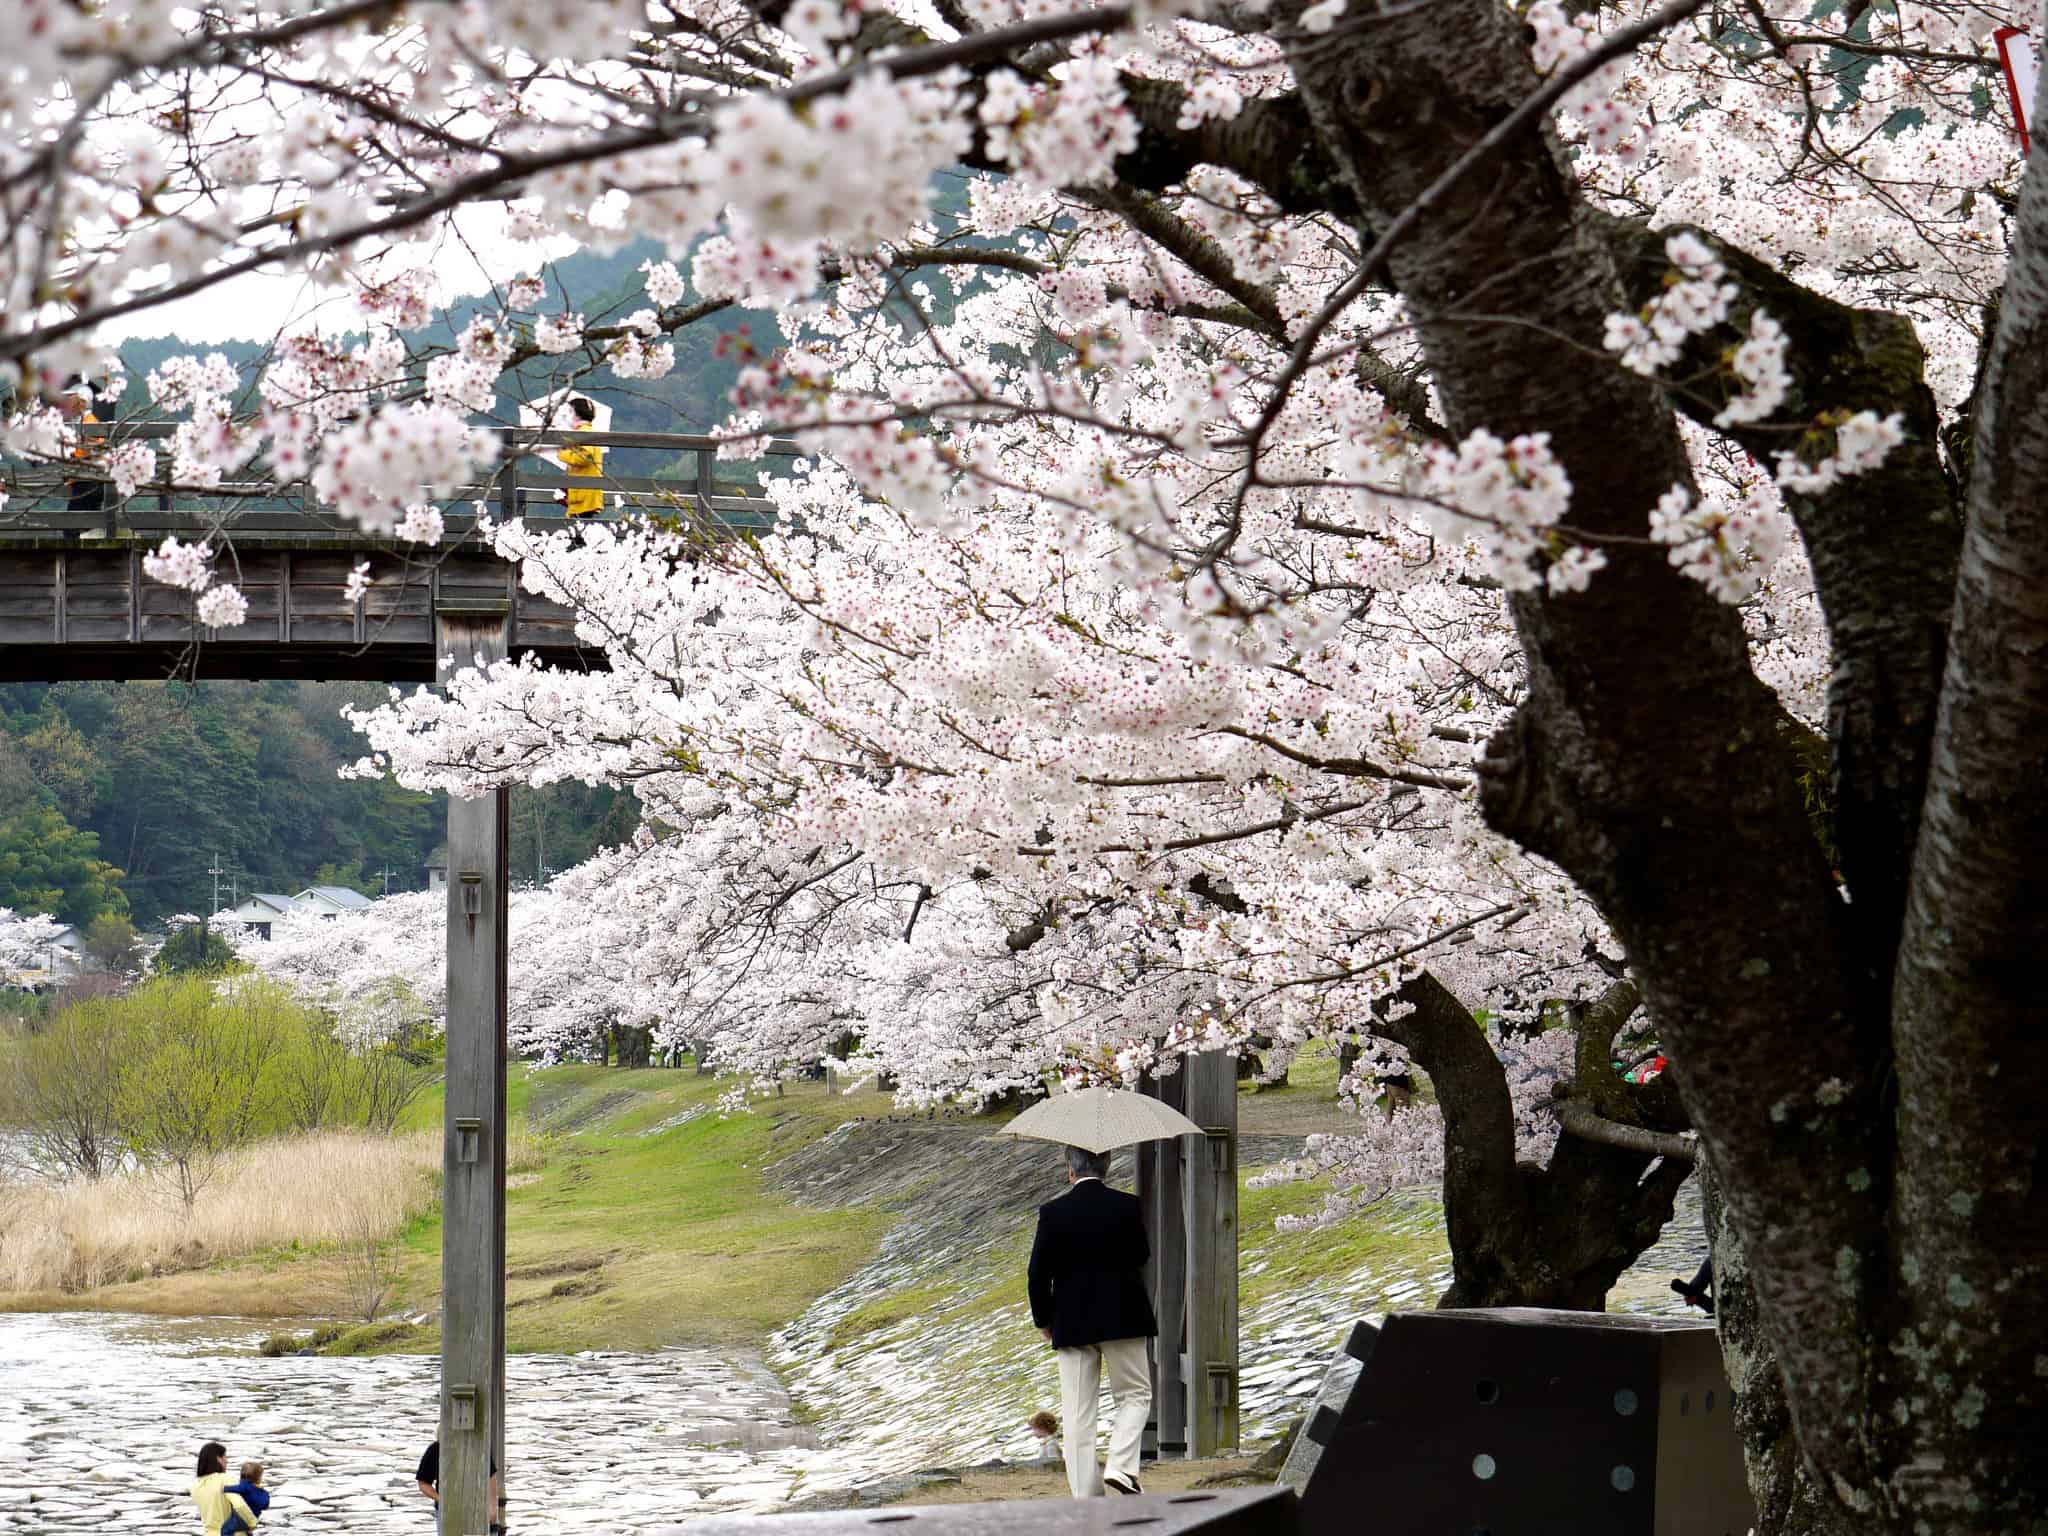 Sakura on a rainy day at Kintai Bridge